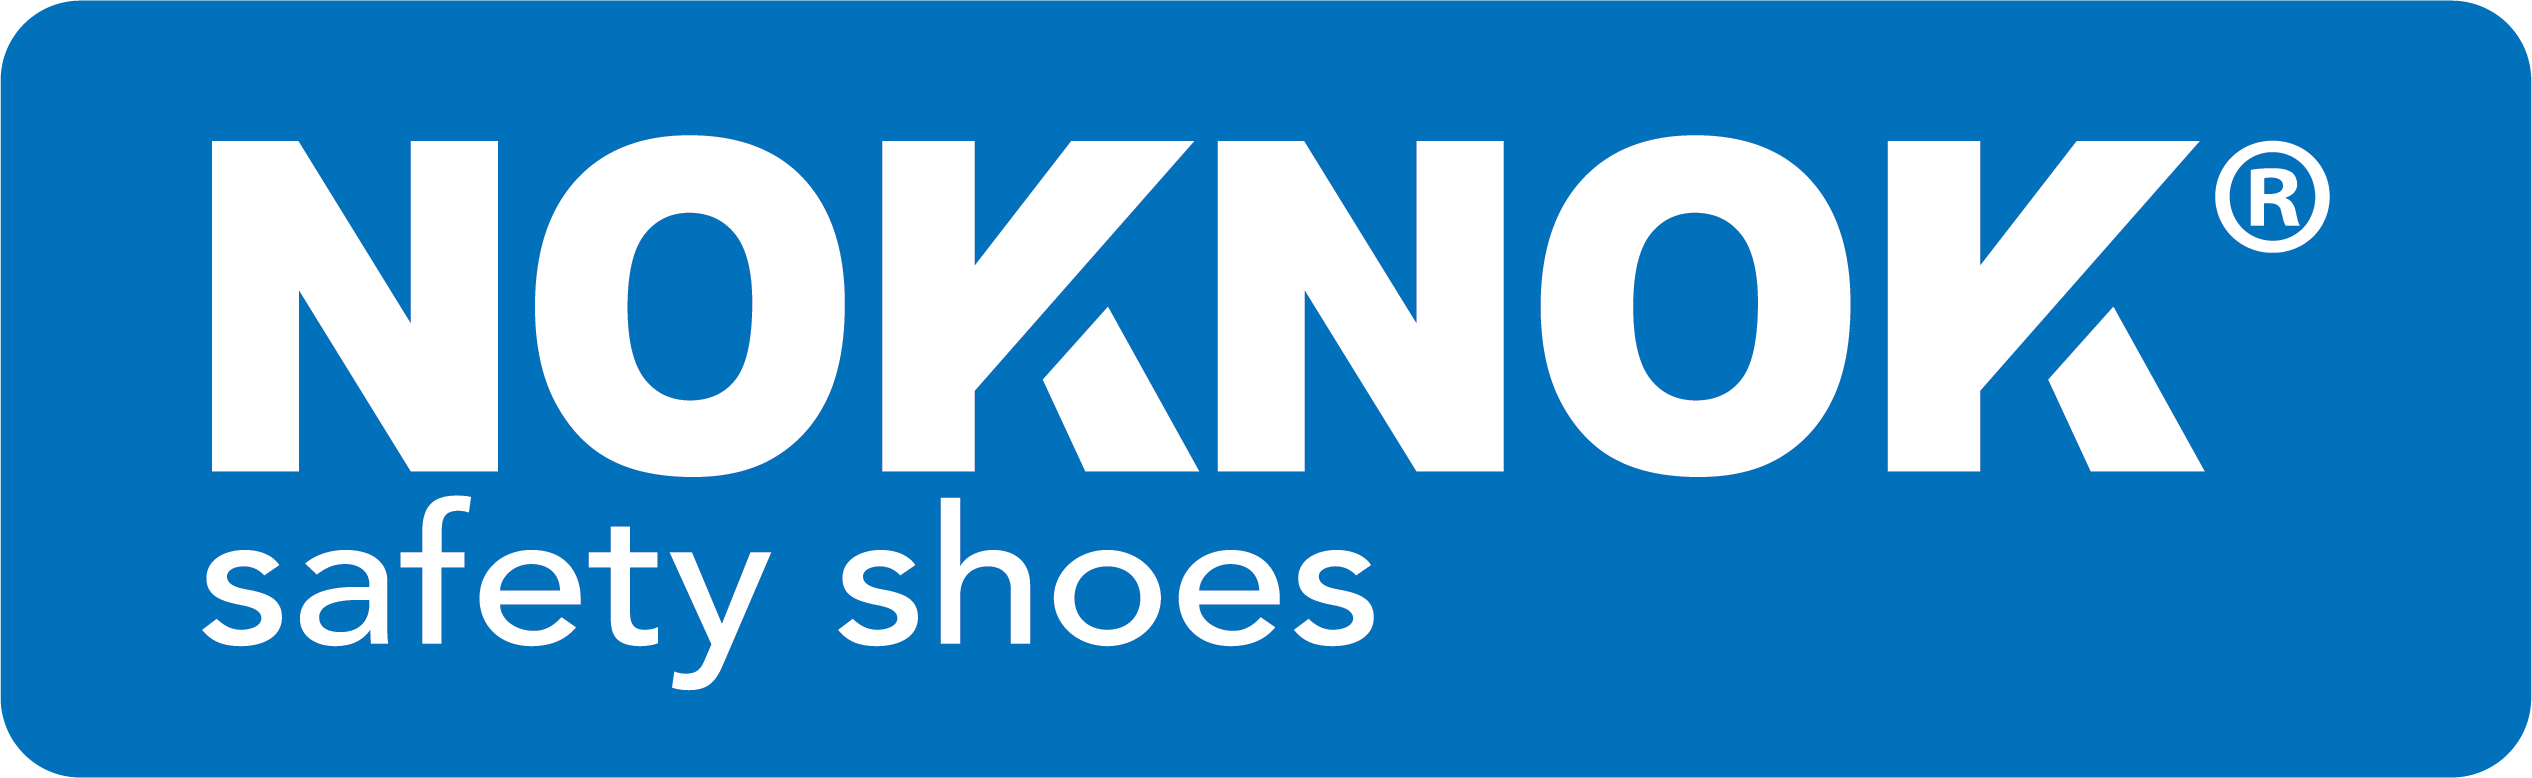 noknok_logo-blue-rounded_box